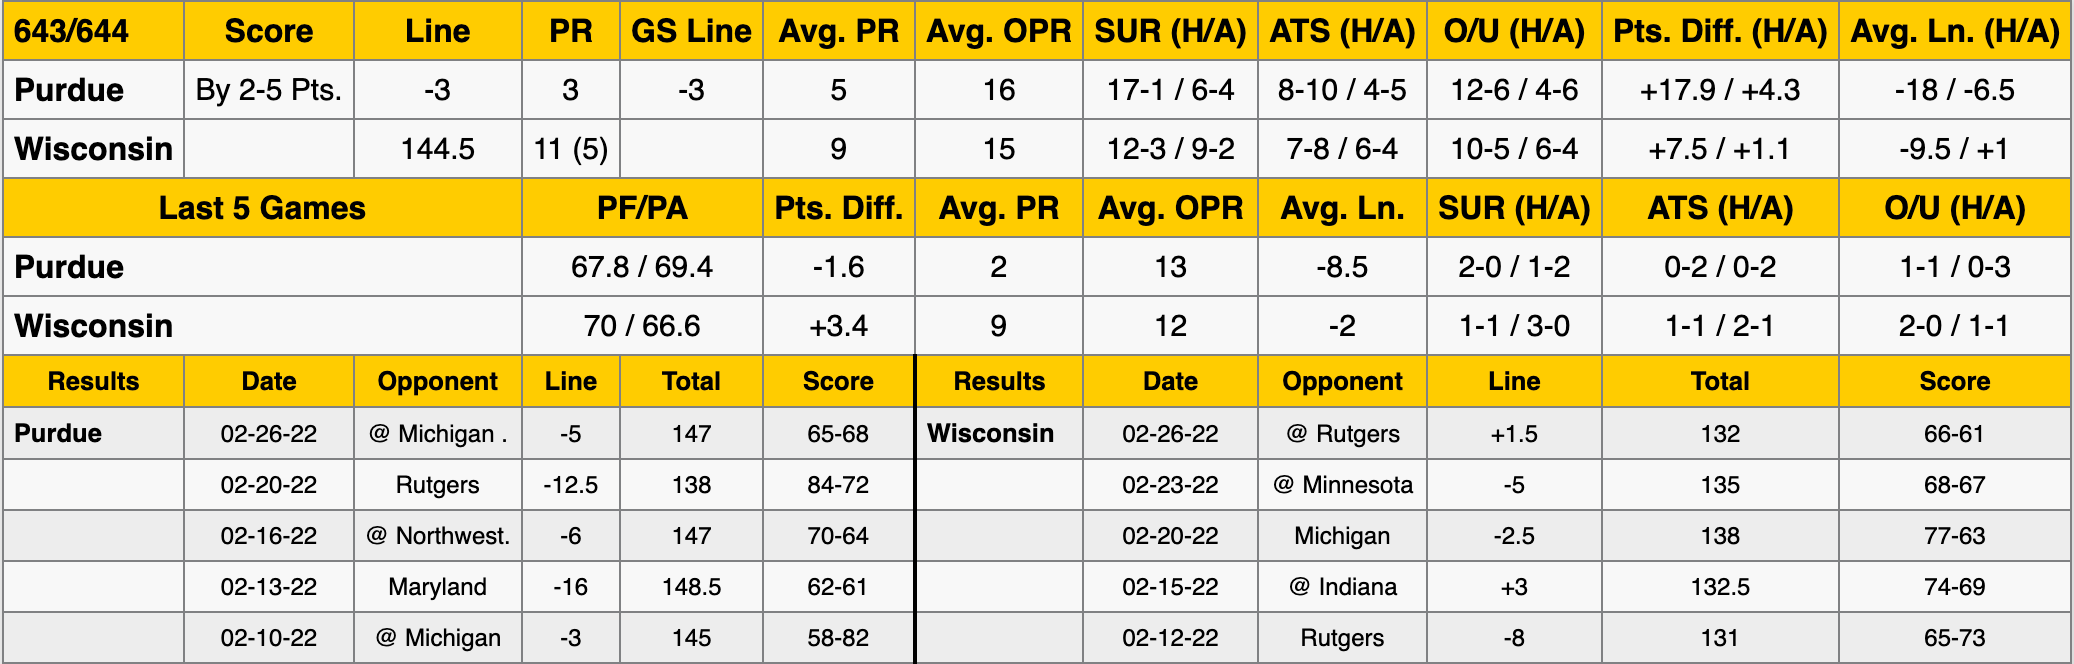 Wisconsin vs Purdue Stats